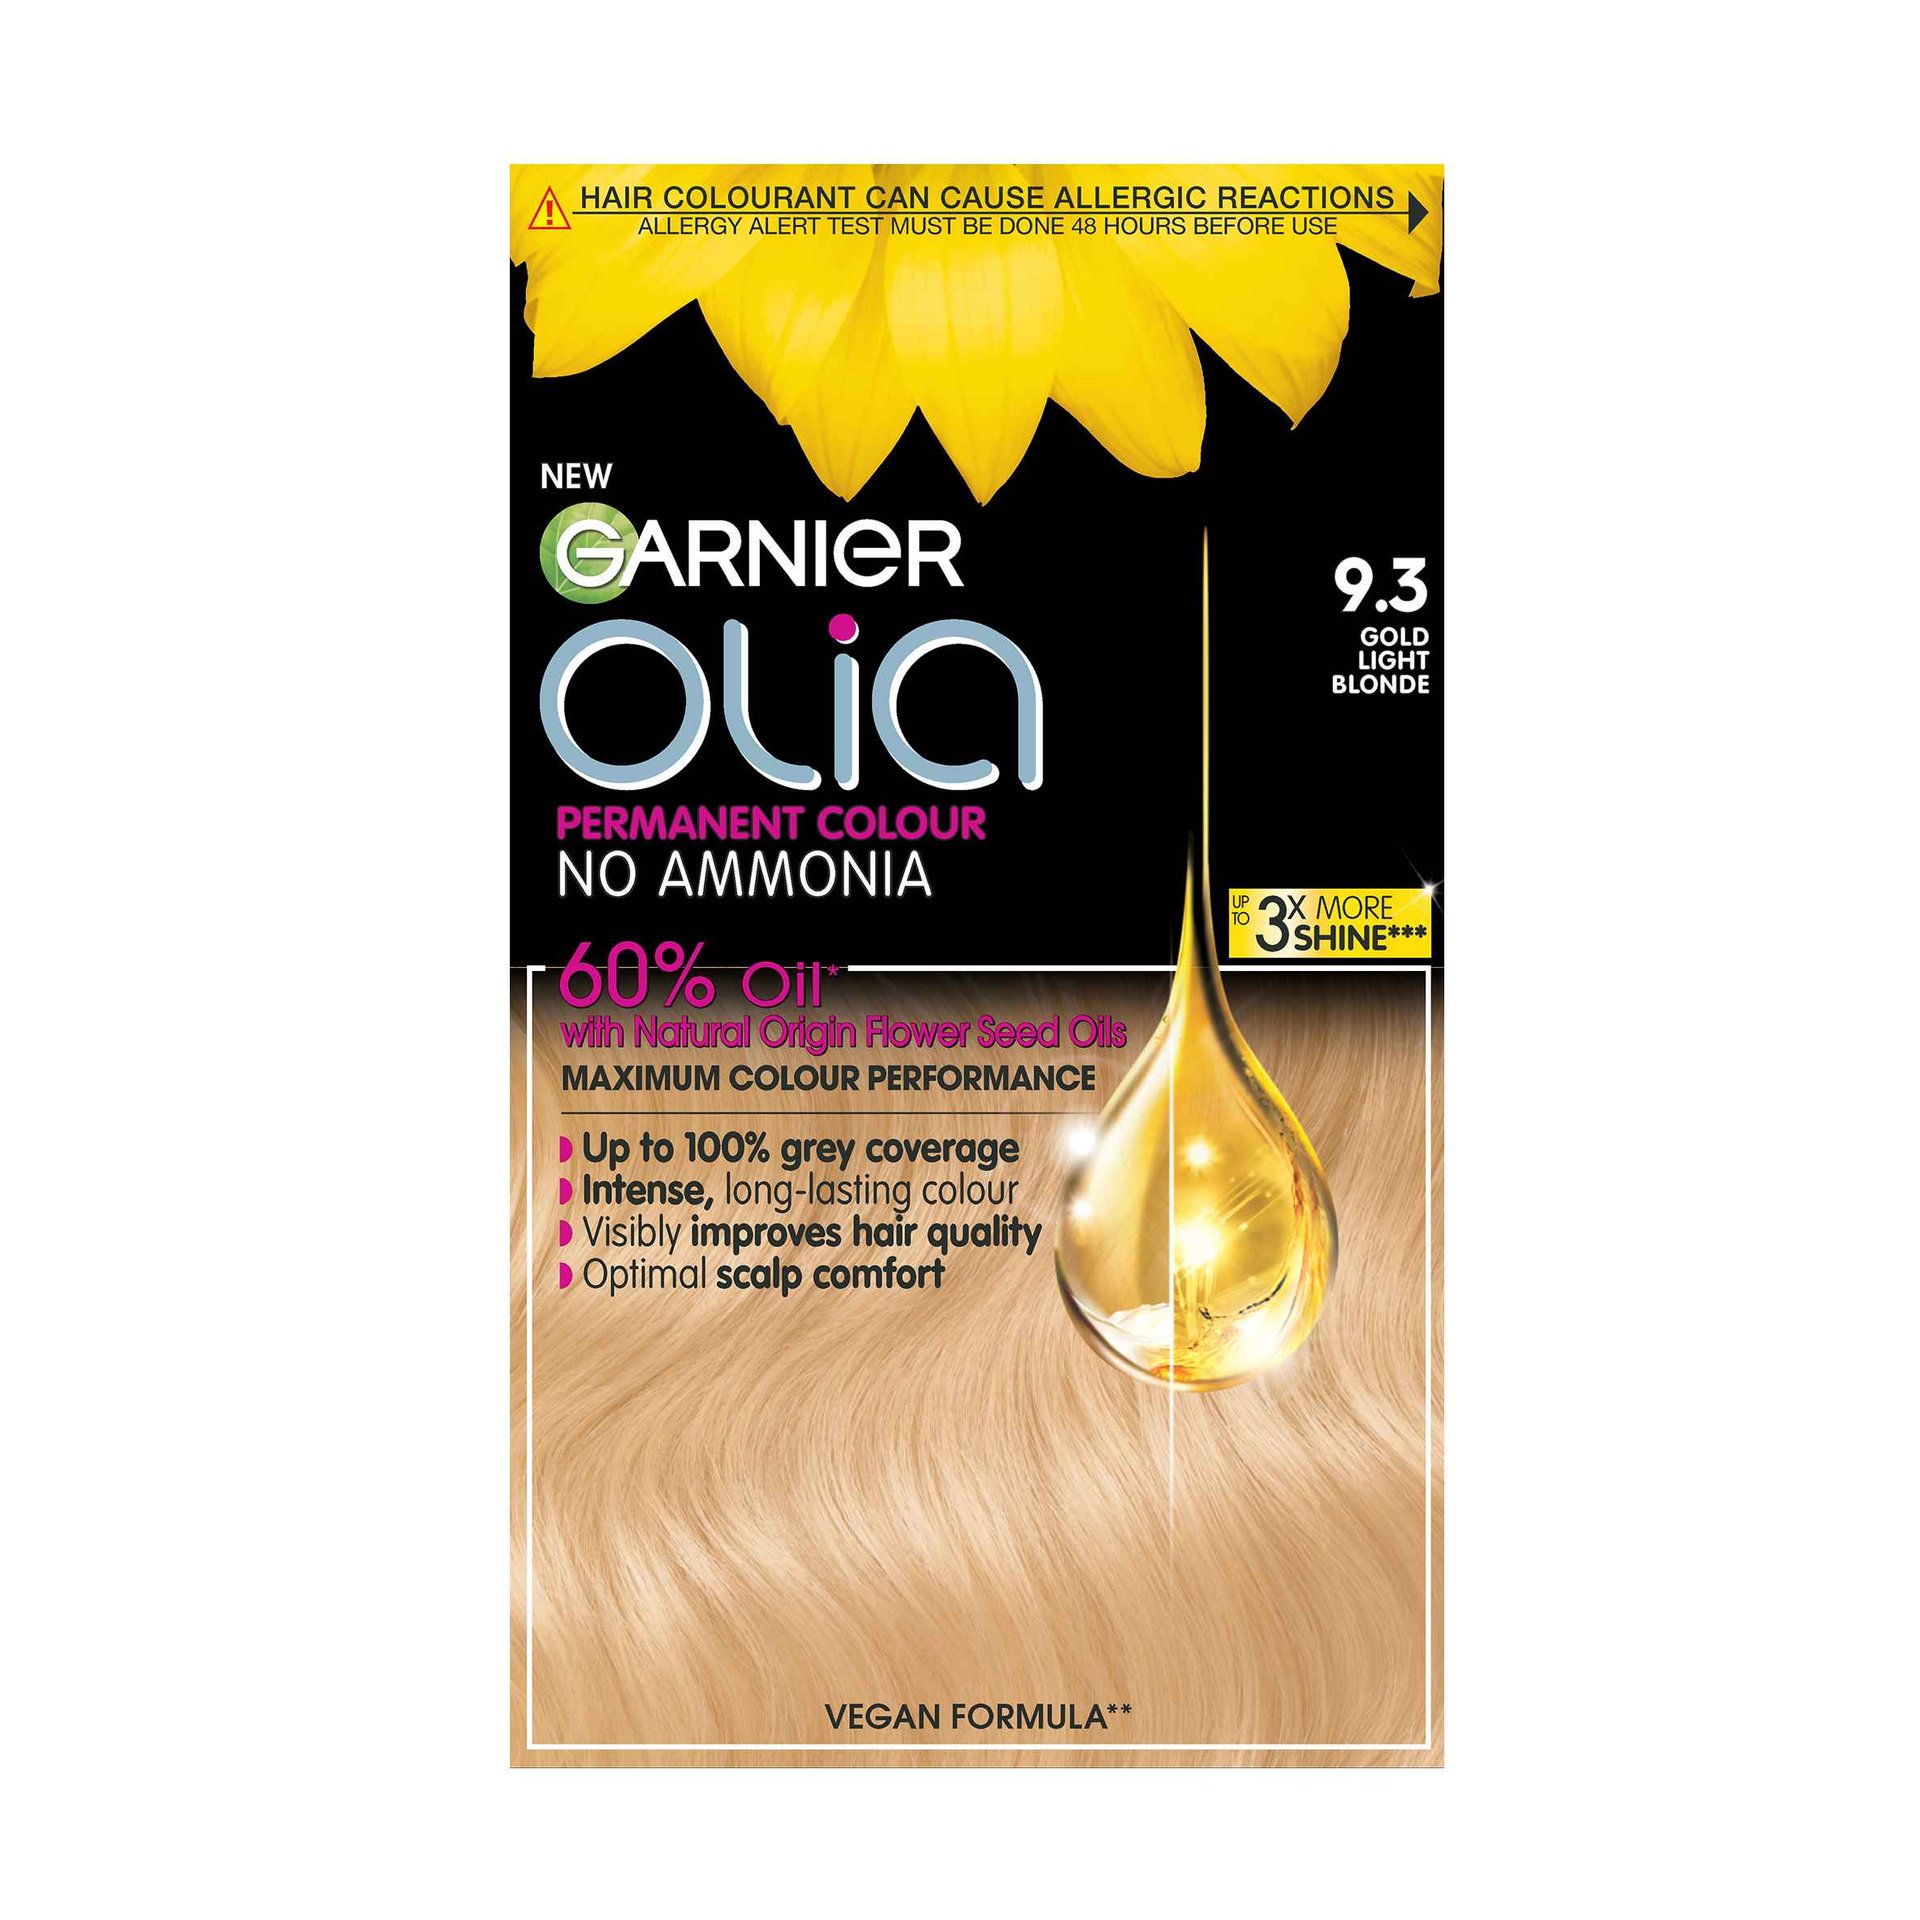 Golden Light Blonde Hair Dye | Olia | Garnier